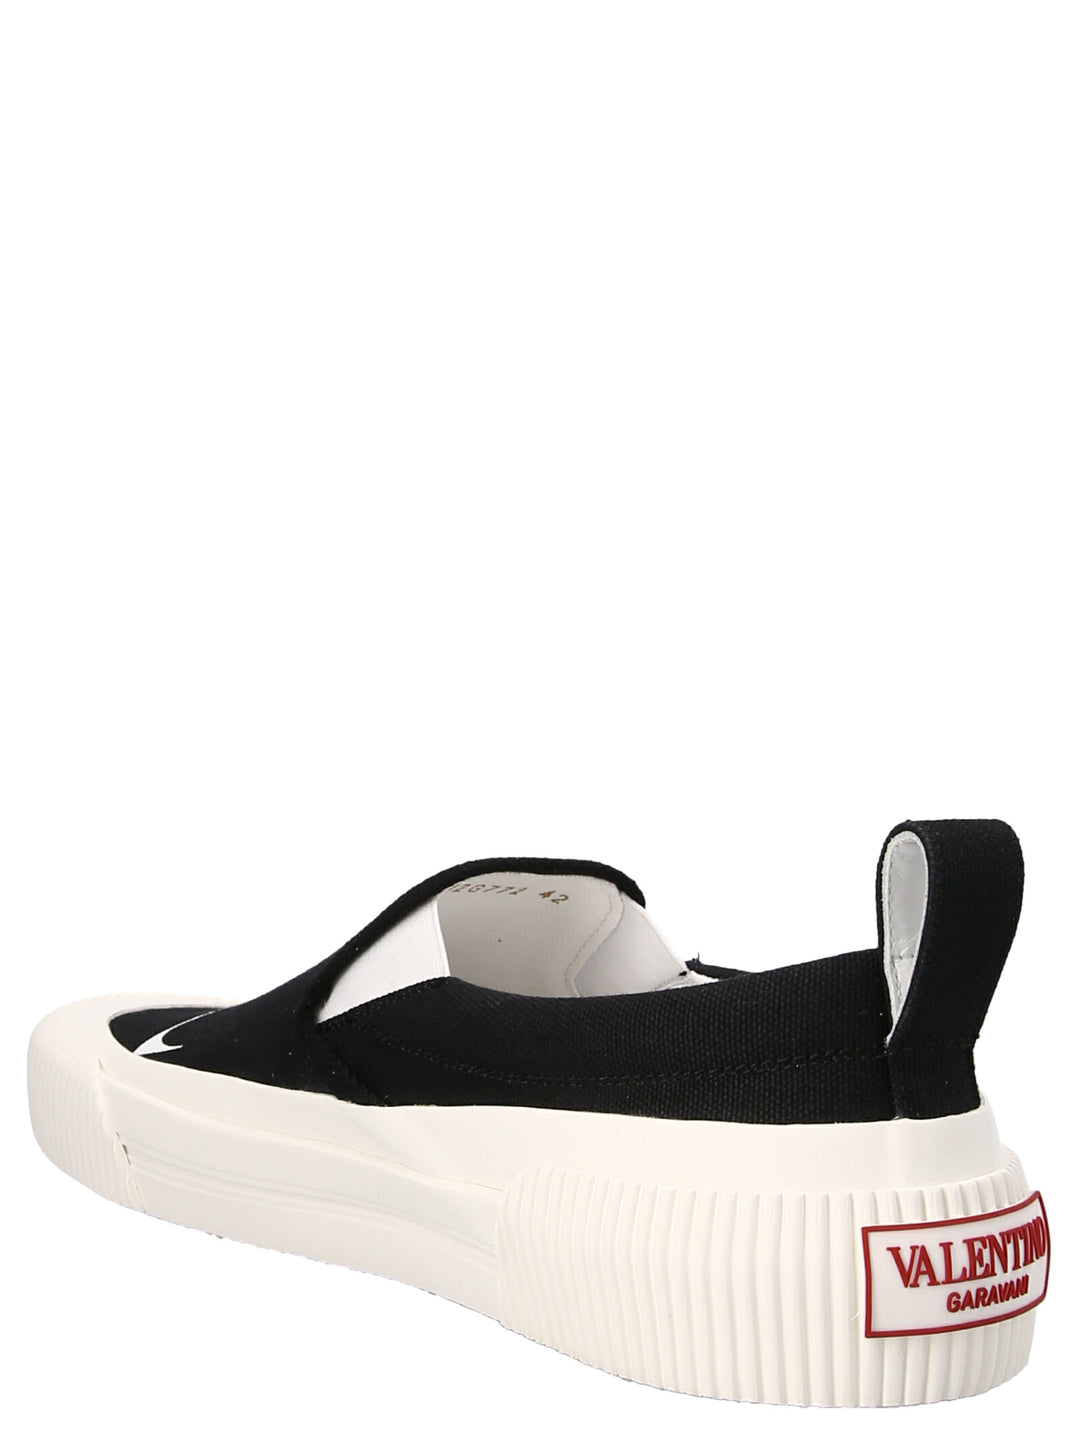 Vltn Sneakers Bianco/Nero